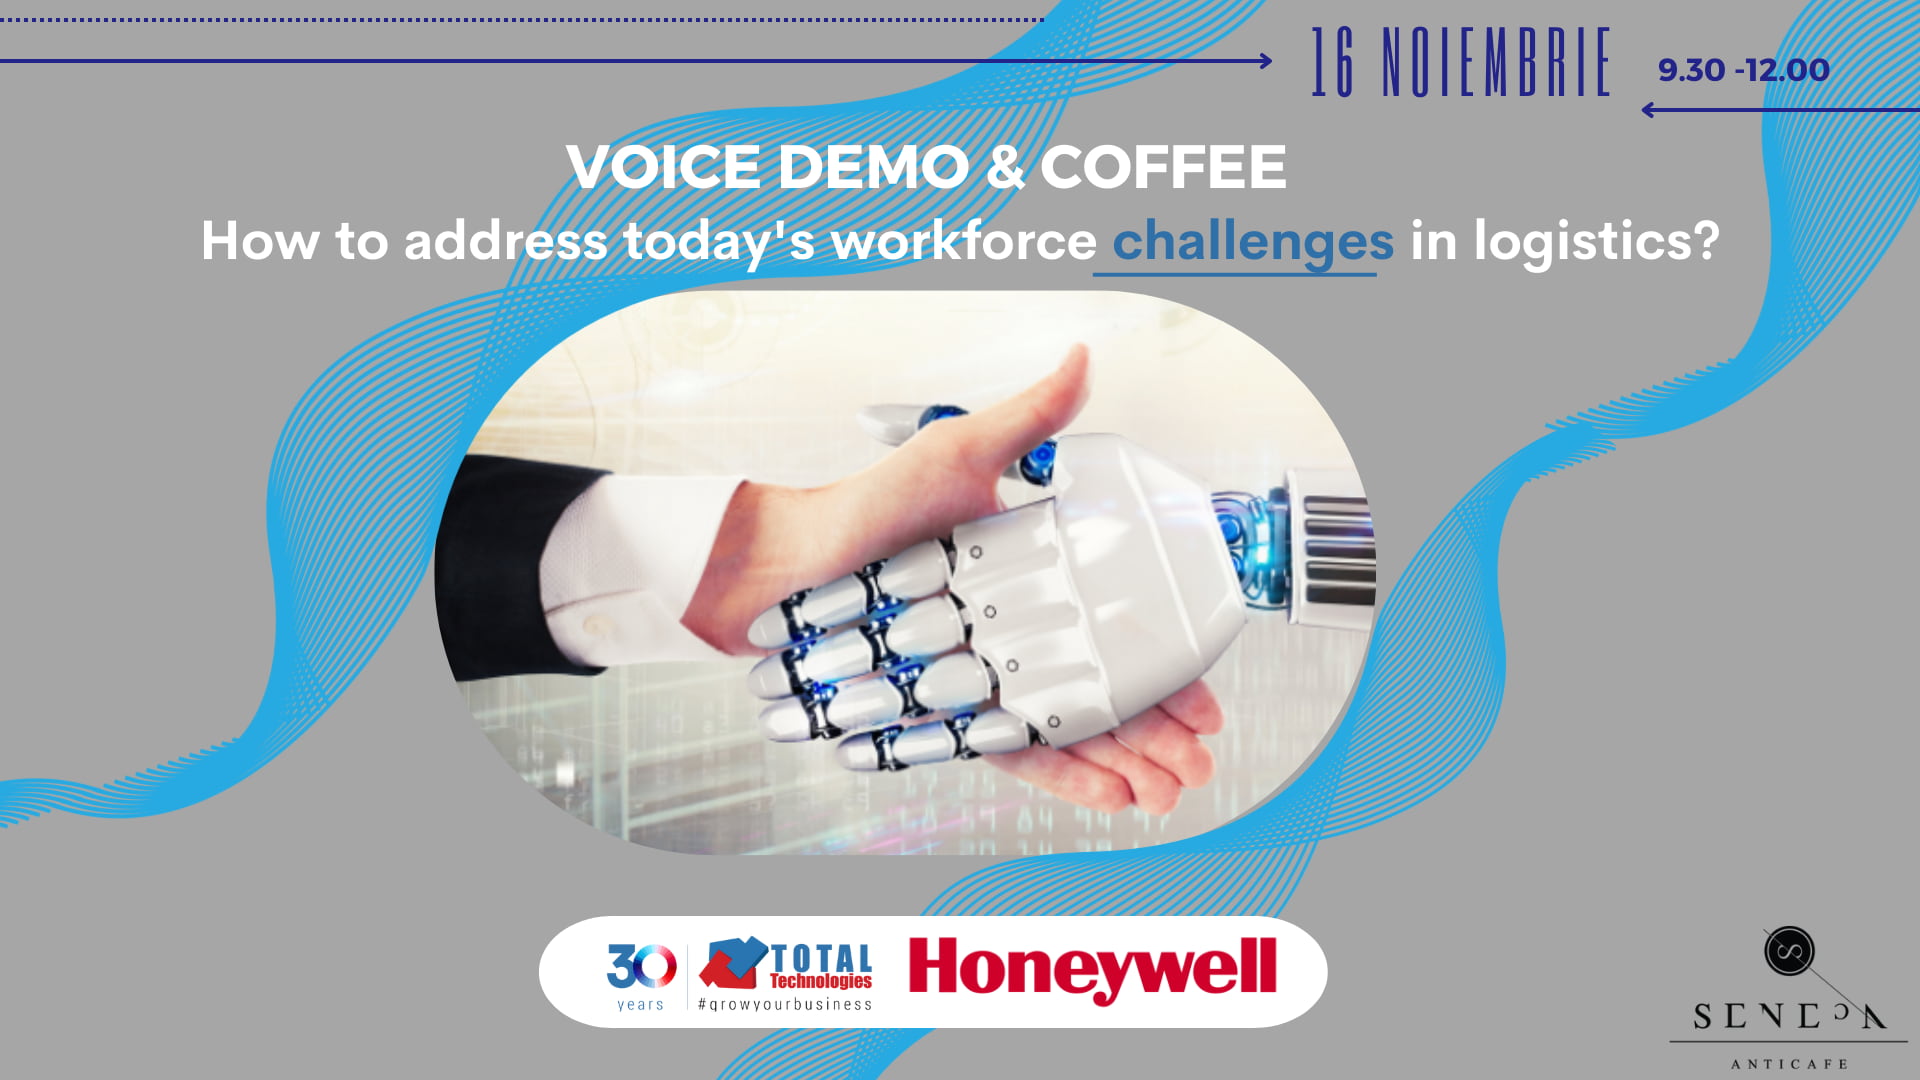 Total Technologies organizează evenimentul “Voice demo & Coffee”